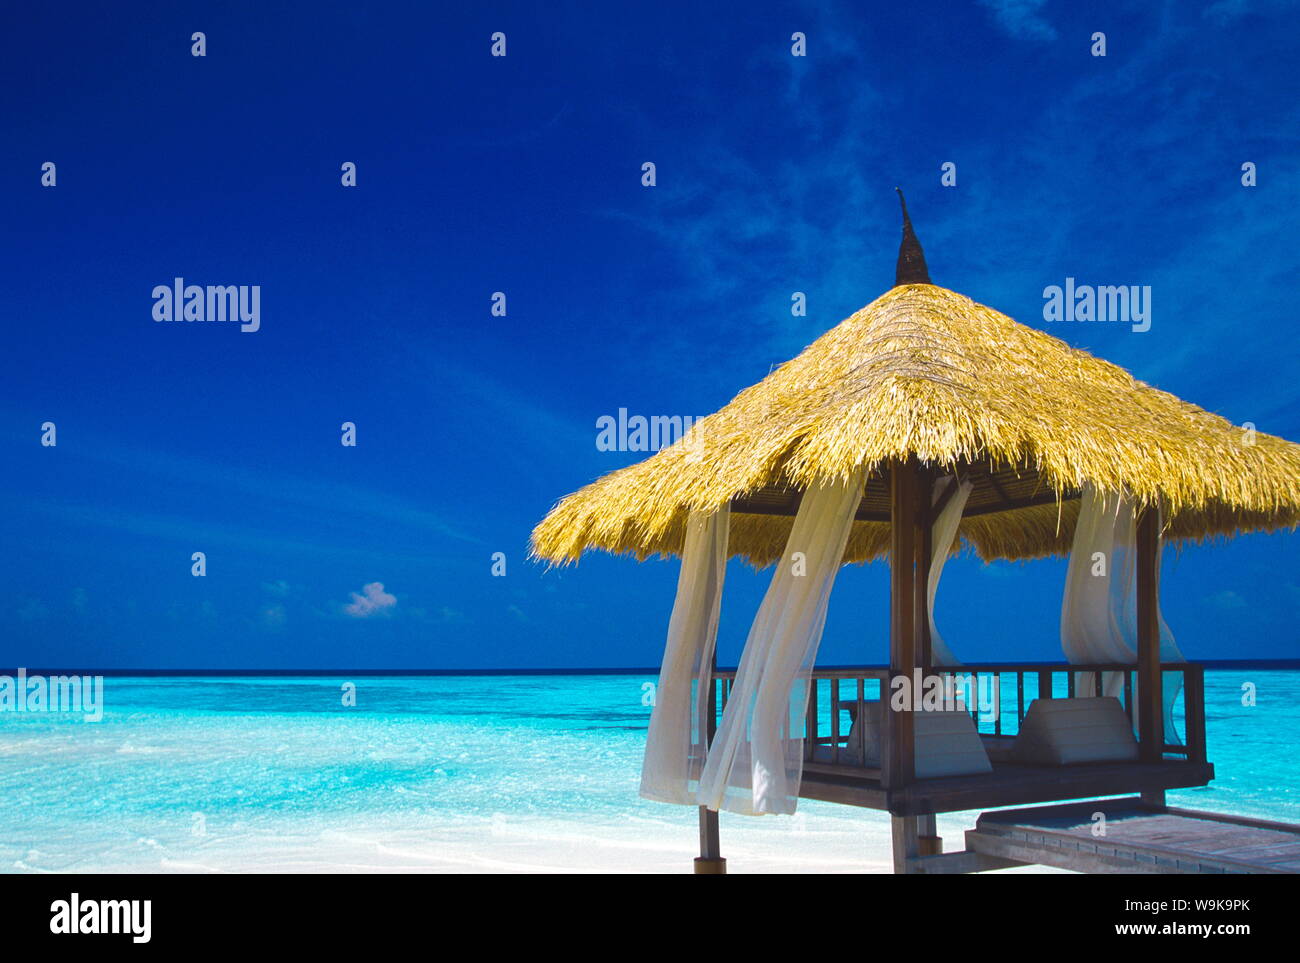 Jetée avec toit de paille, Maldives, océan Indien, Asie Banque D'Images